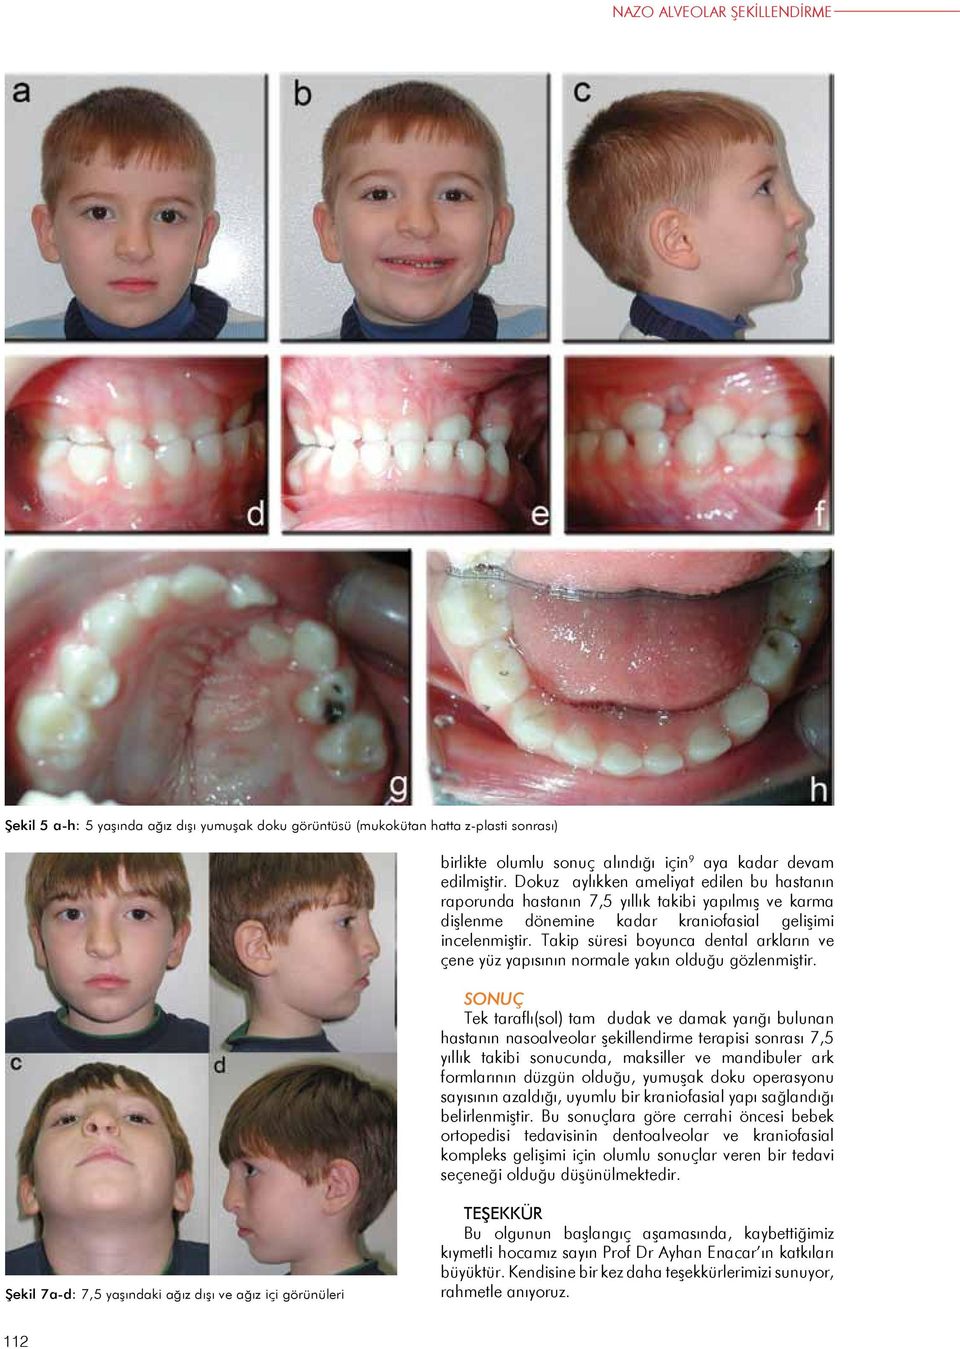 Takip süresi boyunca dental arkların ve çene yüz yapısının normale yakın olduğu gözlenmiştir.